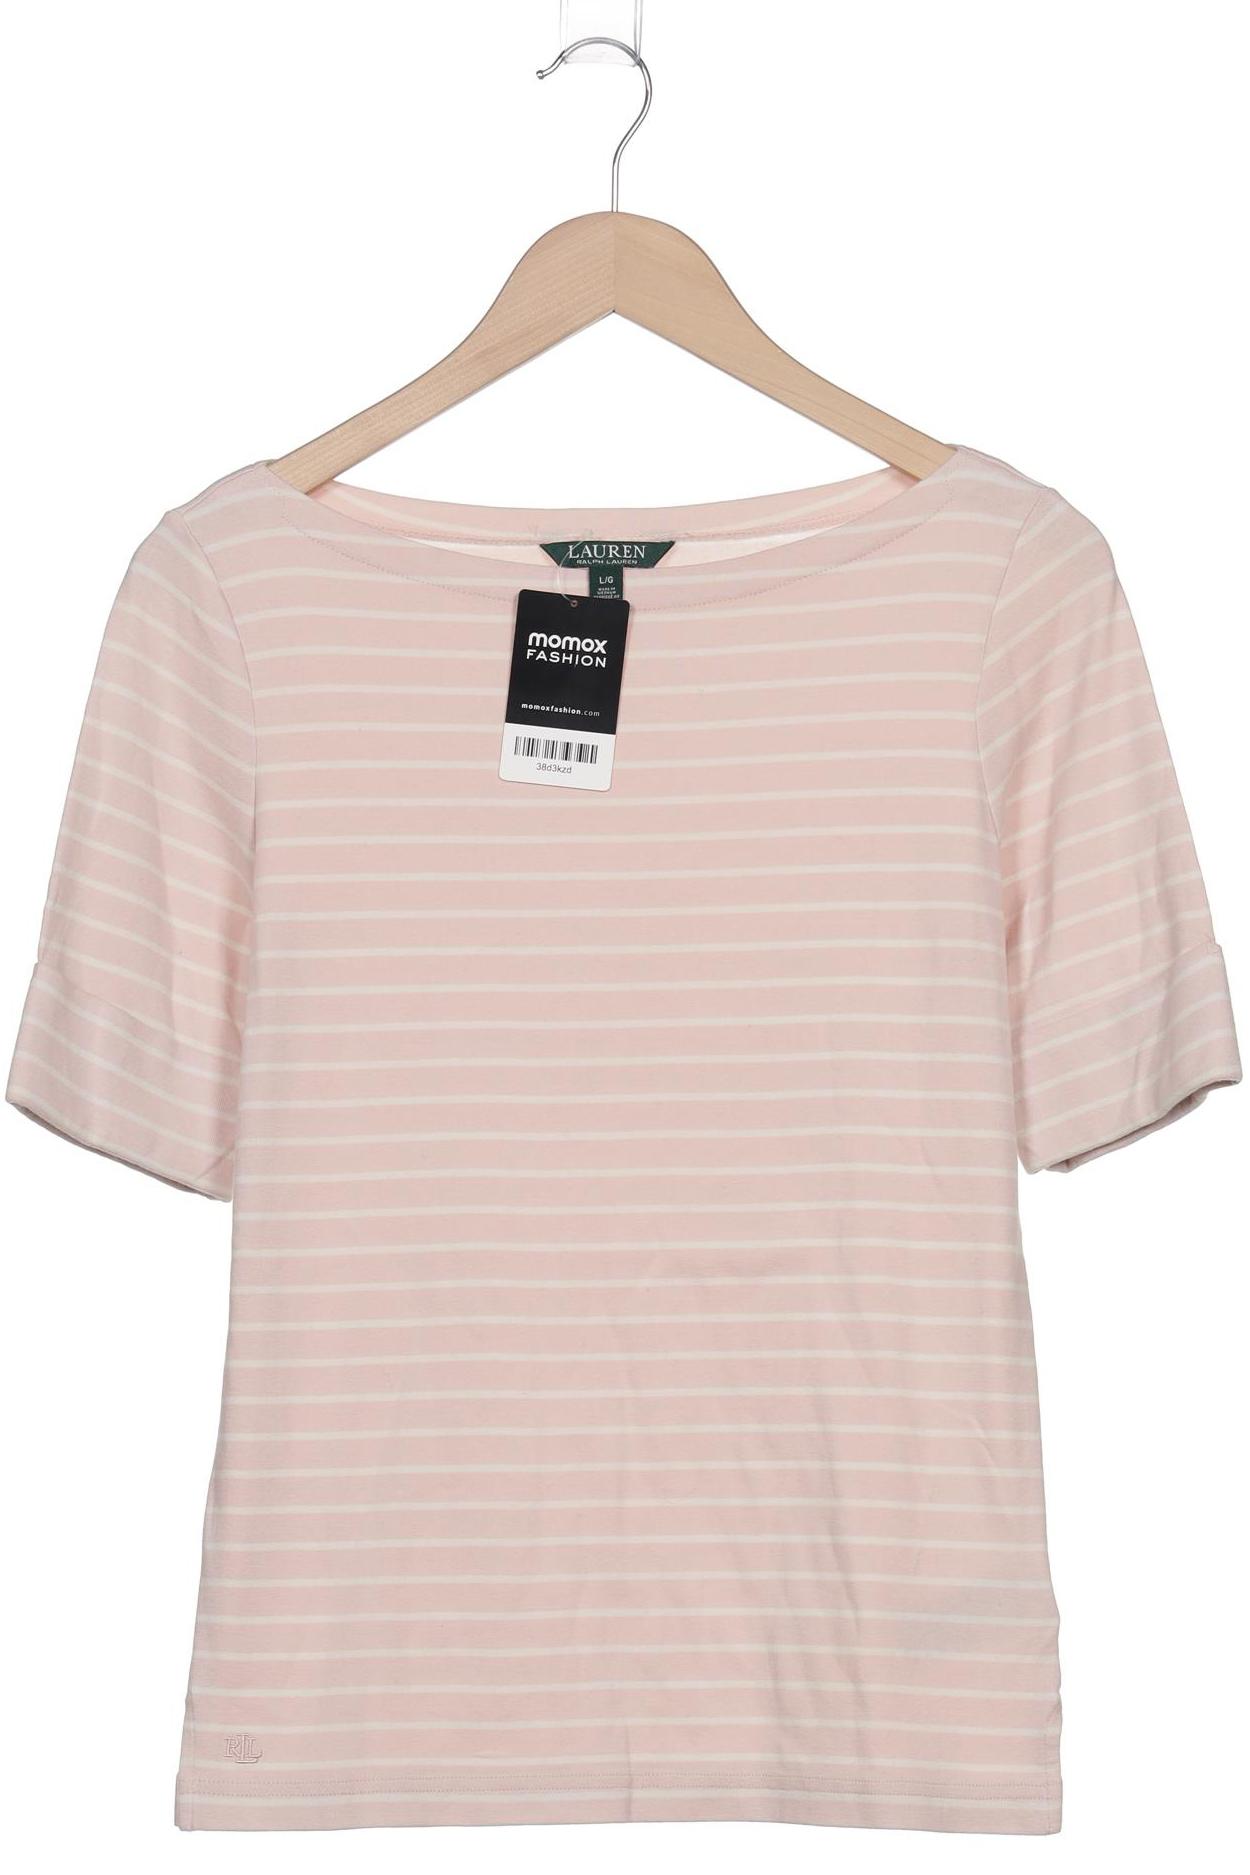 Lauren Ralph Lauren Damen T-Shirt, pink, Gr. 42 von Lauren Ralph Lauren